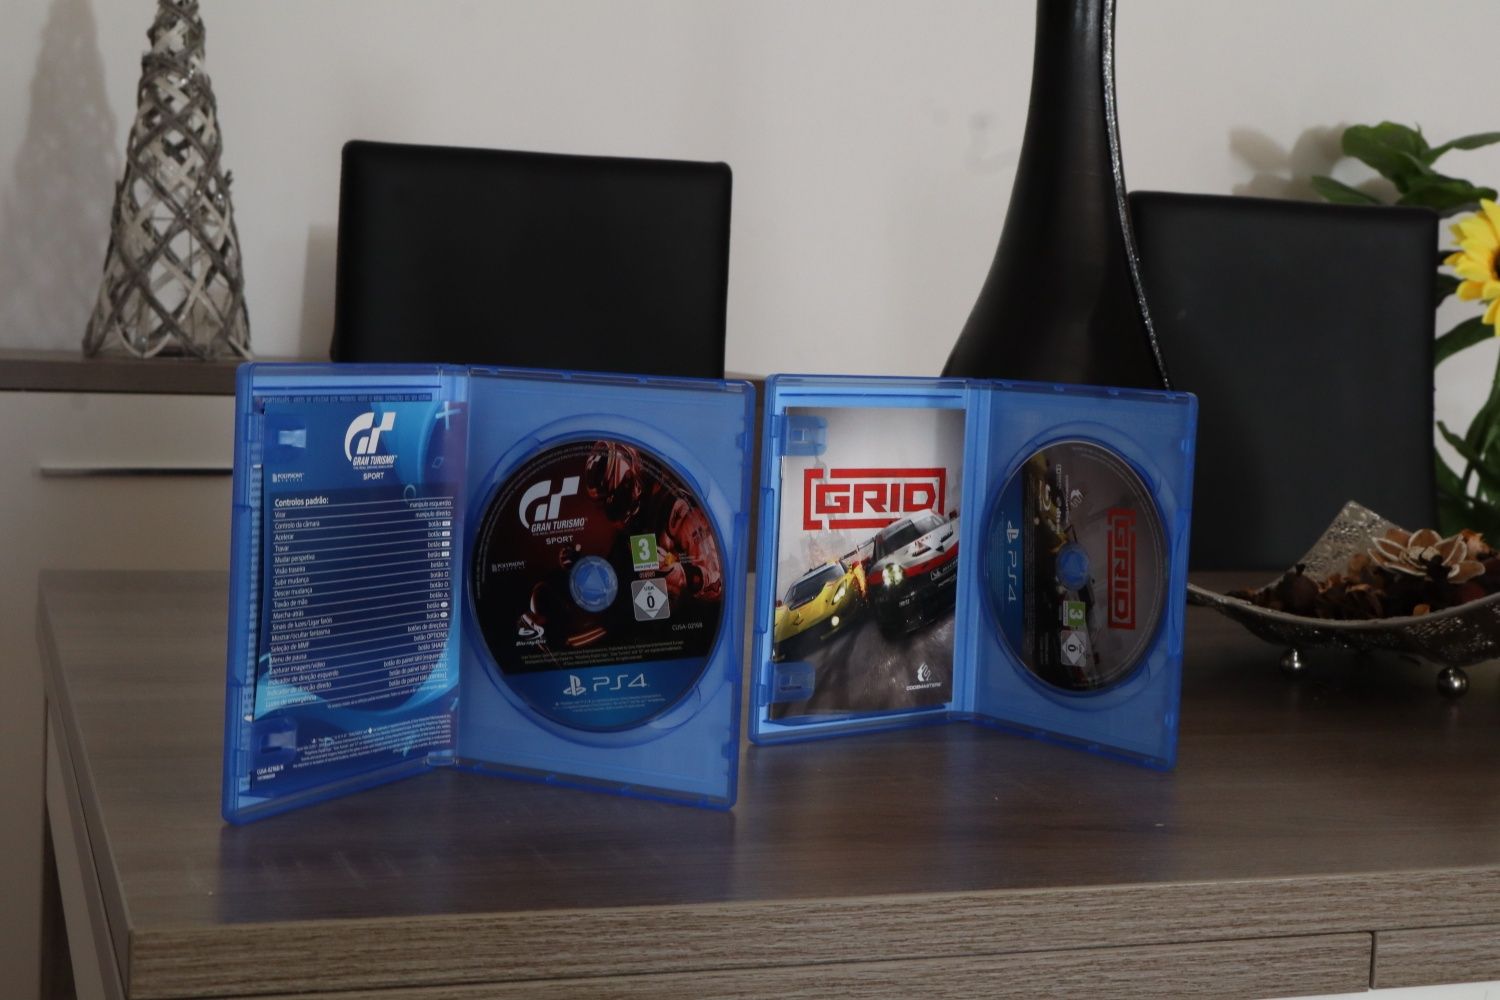 Oferta Especial: Dois jogos de corrida para PS4 por preço imbatível